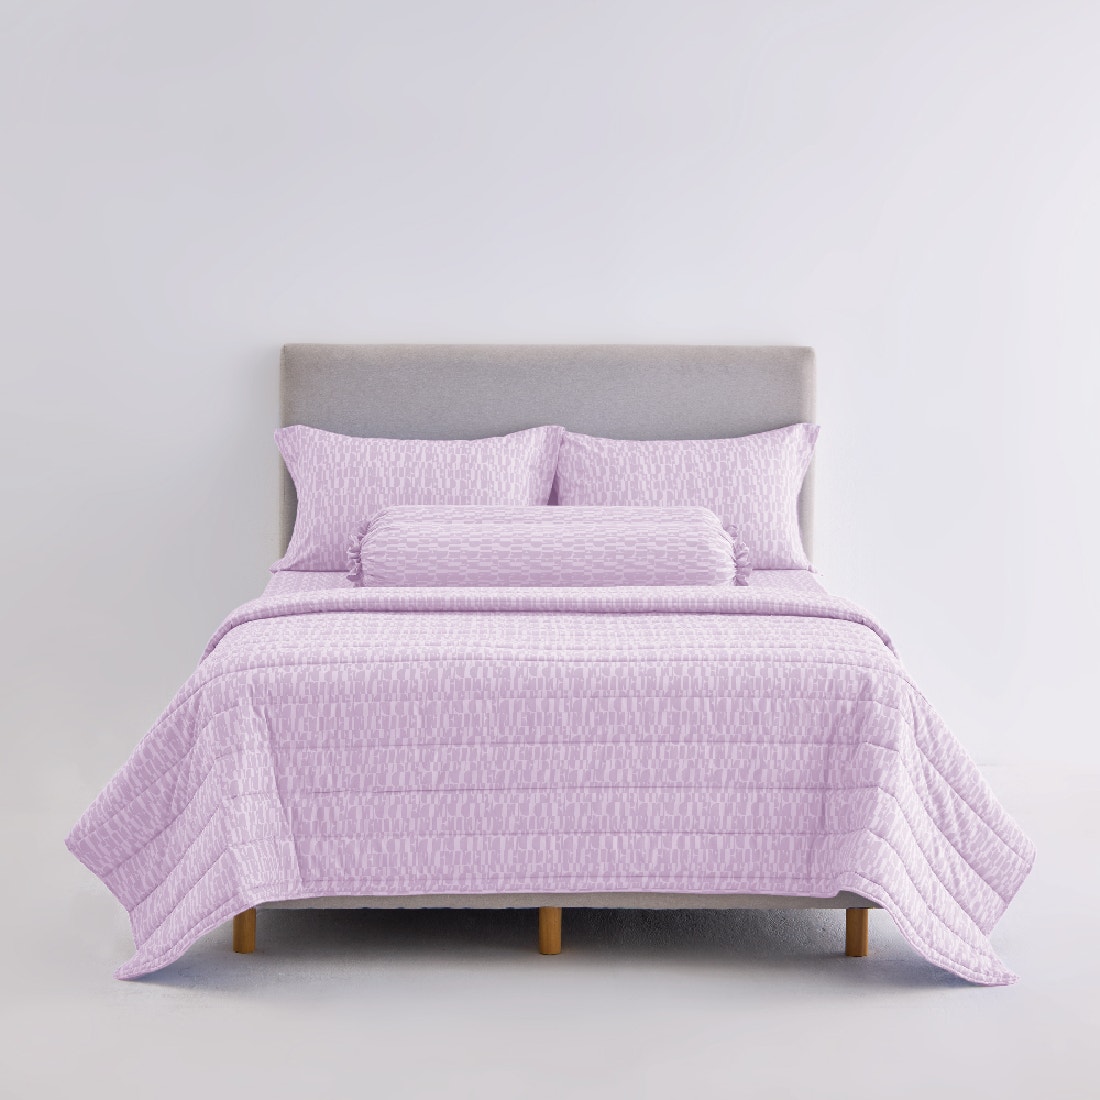 ชุดผ้าปูที่นอนพร้อมผ้านวม ELLE DECOR รุ่น PARIS SIMPLICITE - PALMIER ขนาด 3.5ฟุต 4ชิ้น-1